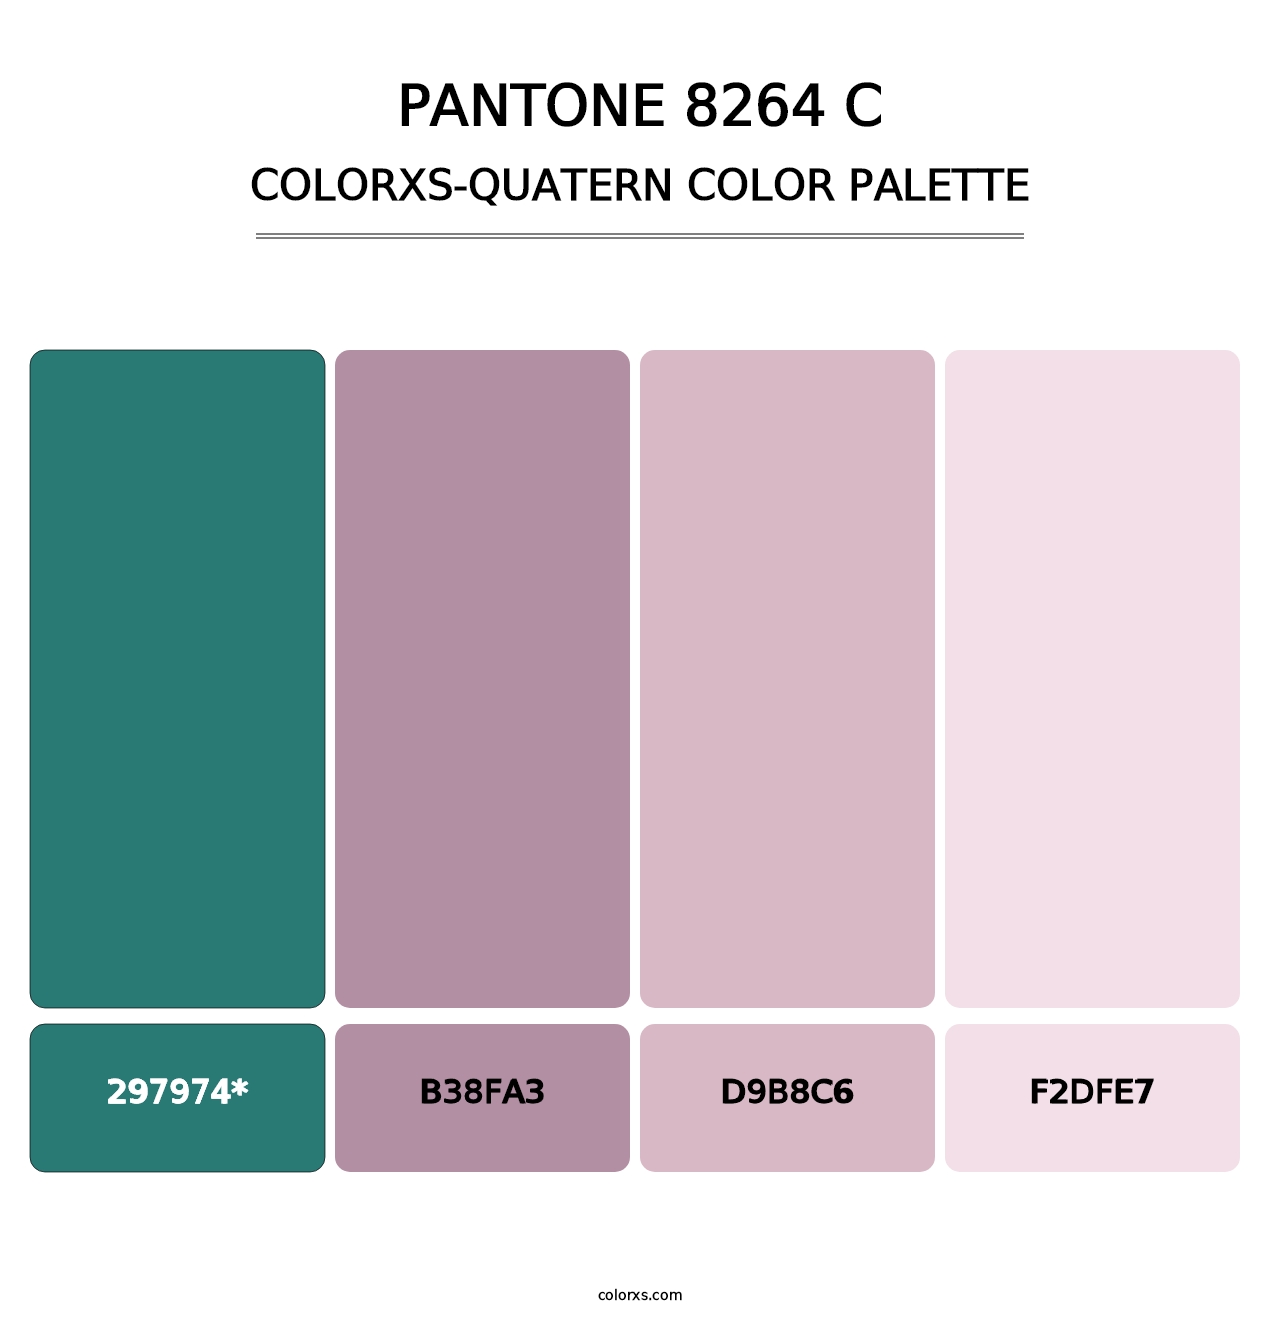 PANTONE 8264 C - Colorxs Quatern Palette